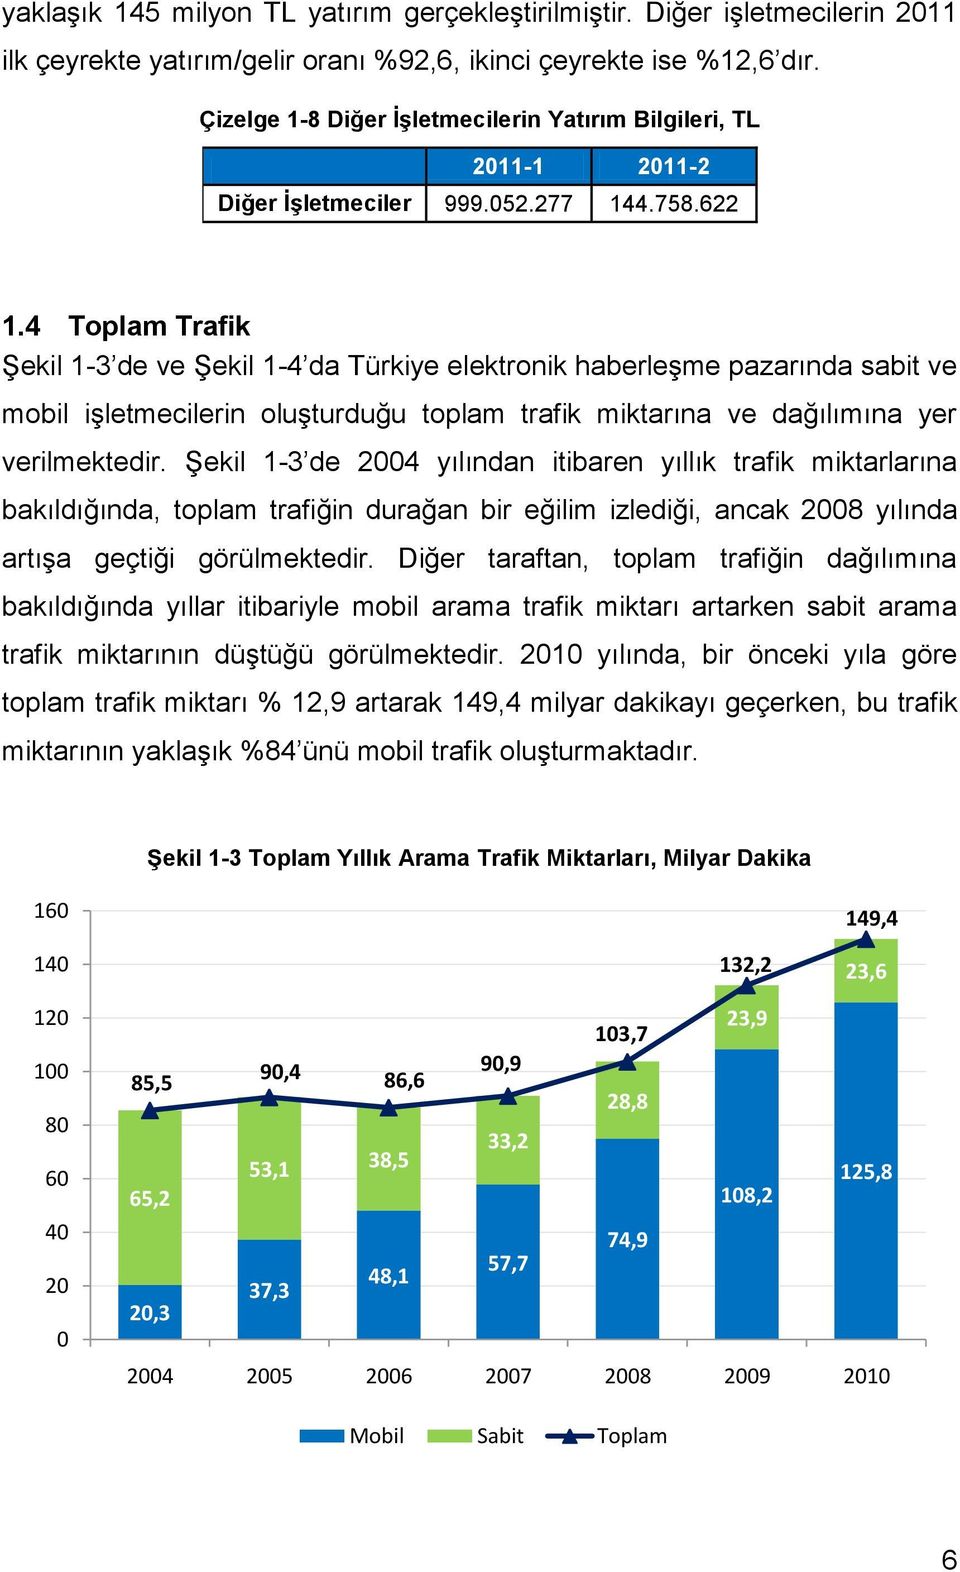 4 Toplam Trafik Şekil 1-3 de ve Şekil 1-4 da Türkiye elektronik haberleşme pazarında sabit ve mobil işletmecilerin oluşturduğu toplam trafik miktarına ve dağılımına yer verilmektedir.